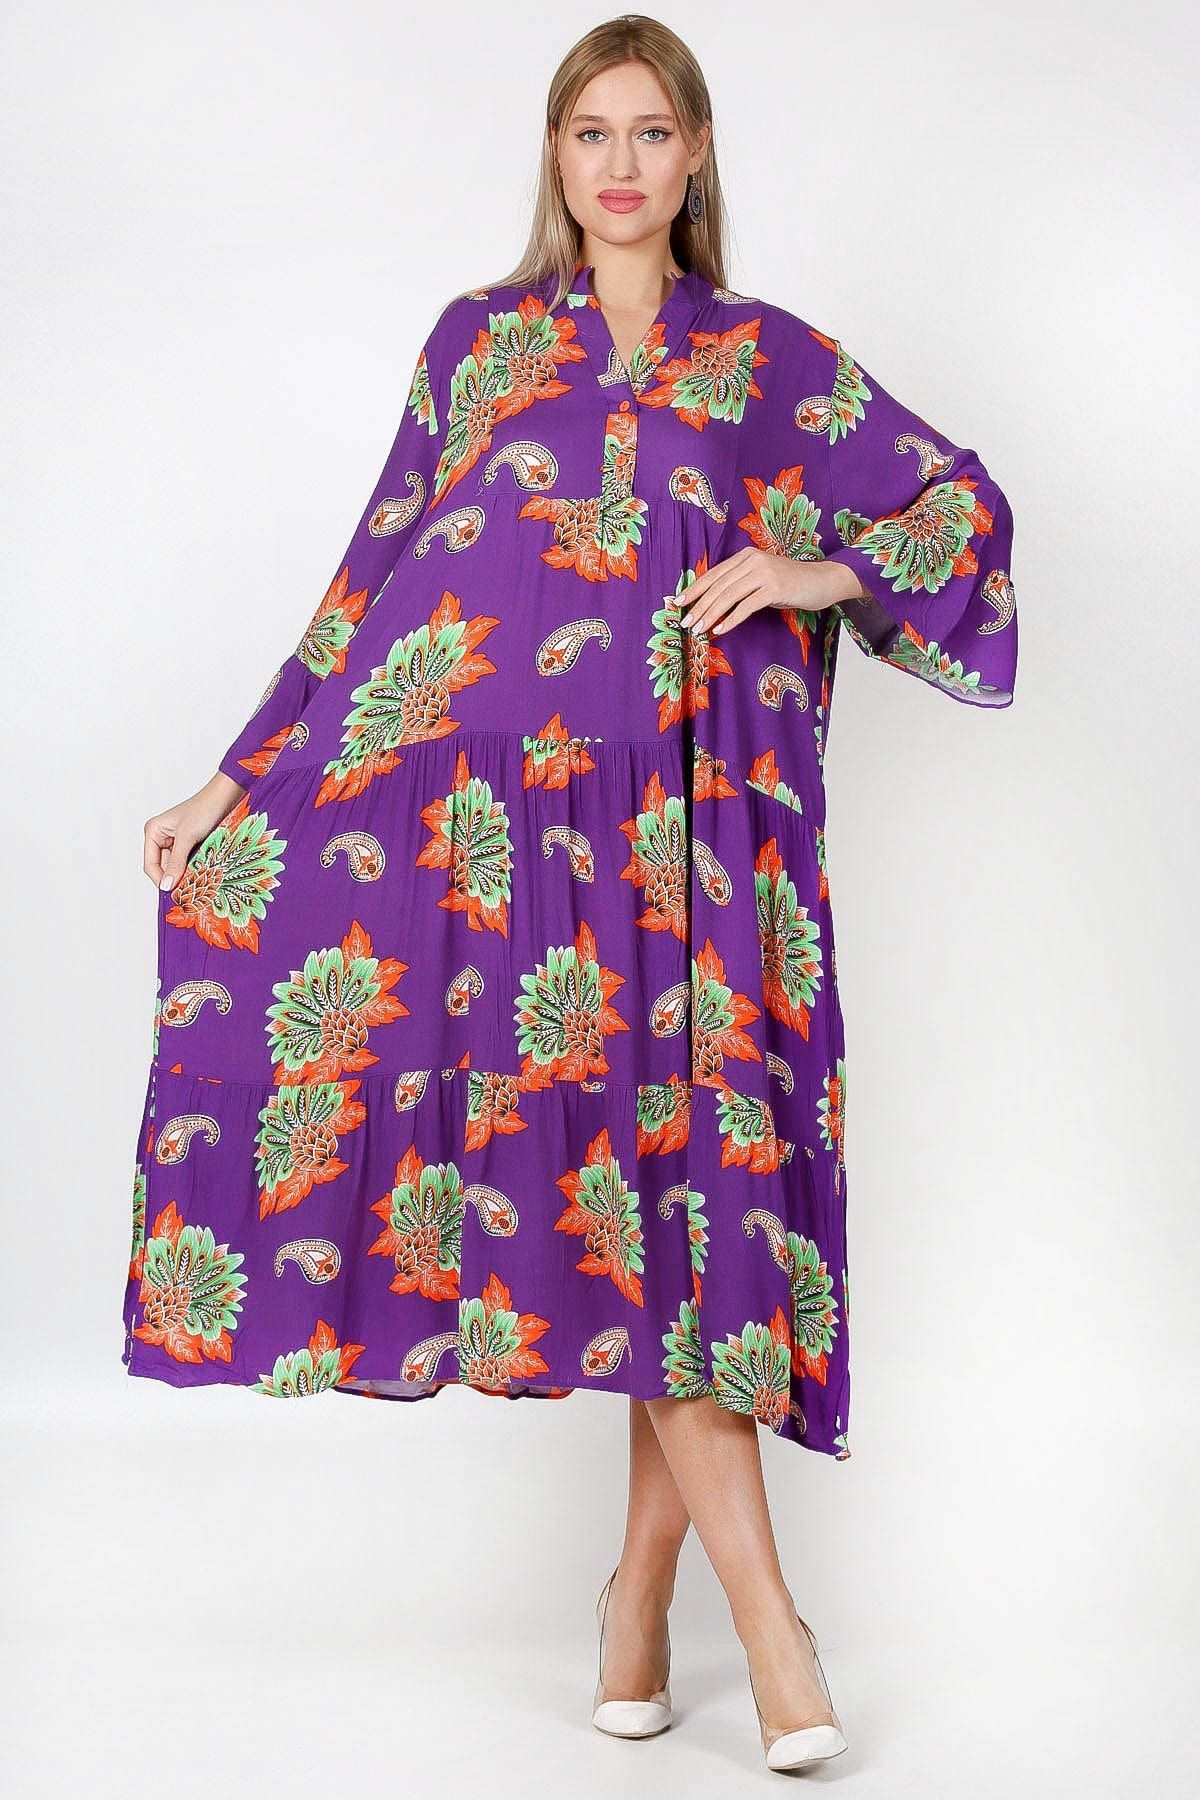 Chiccy Mor Patlı Yaka Fırfırlı Kol Çiçekli Allover Baskılı Geniş Kesim Dokuma Elbise